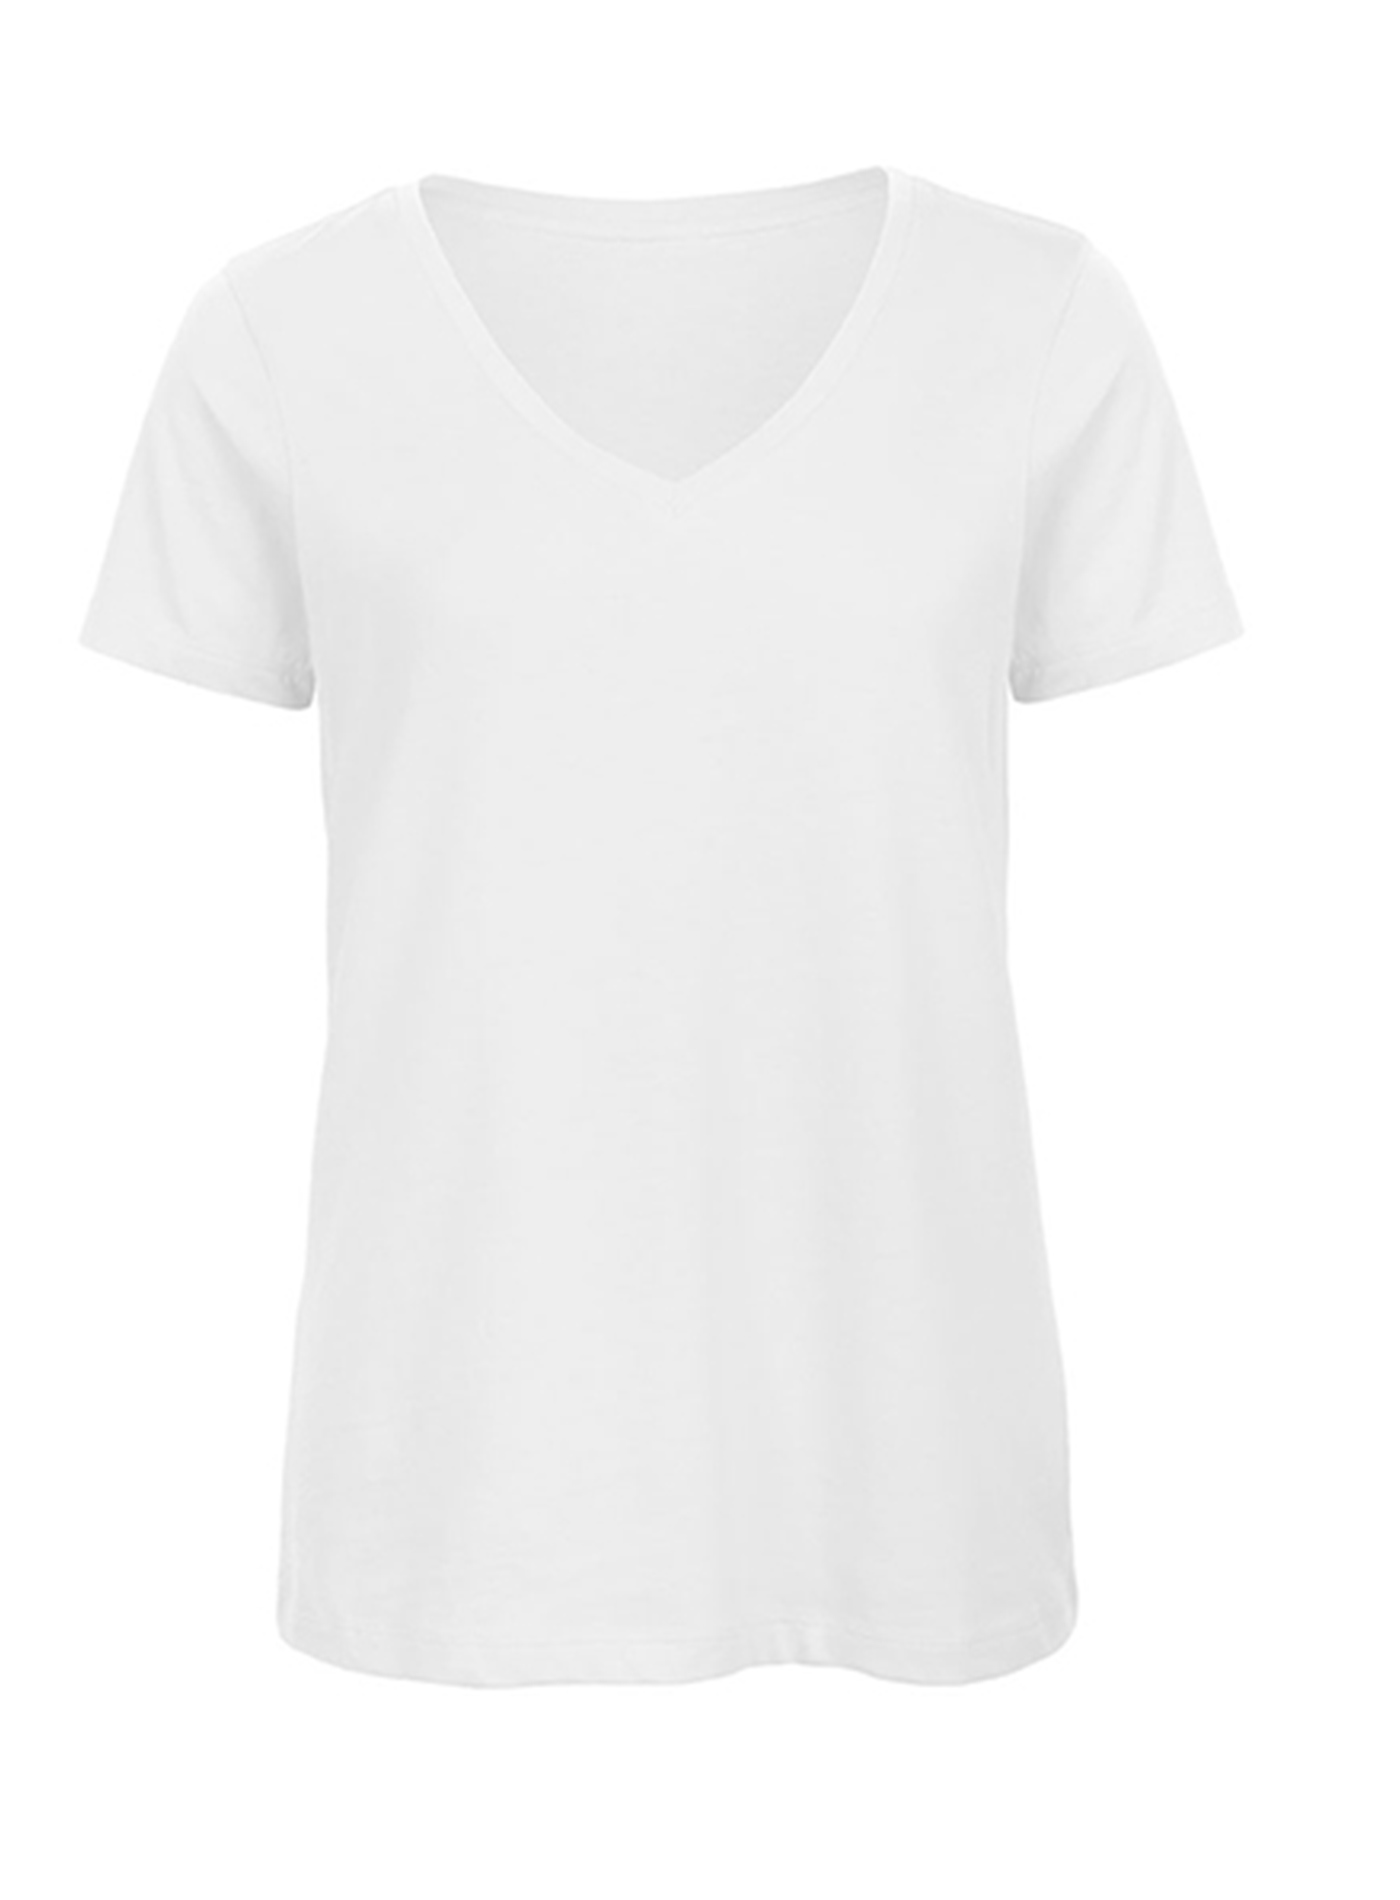 Dámské tričko s výstřihem do V B&C Collection Inspire - Bílá L